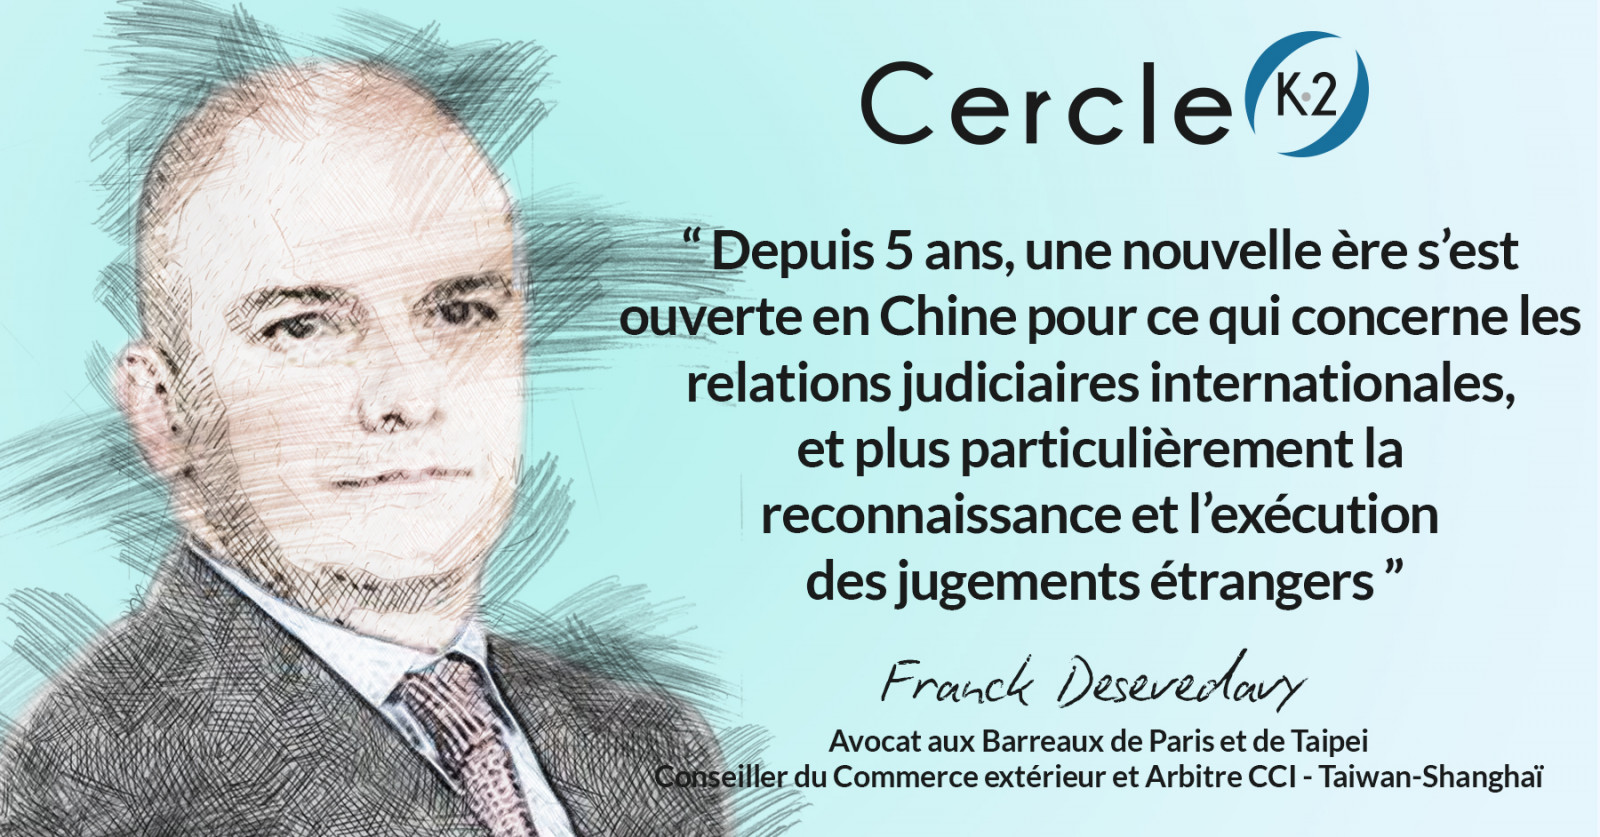 La Chine s'ouvre aux décisions de justice étrangères   - Cercle K2